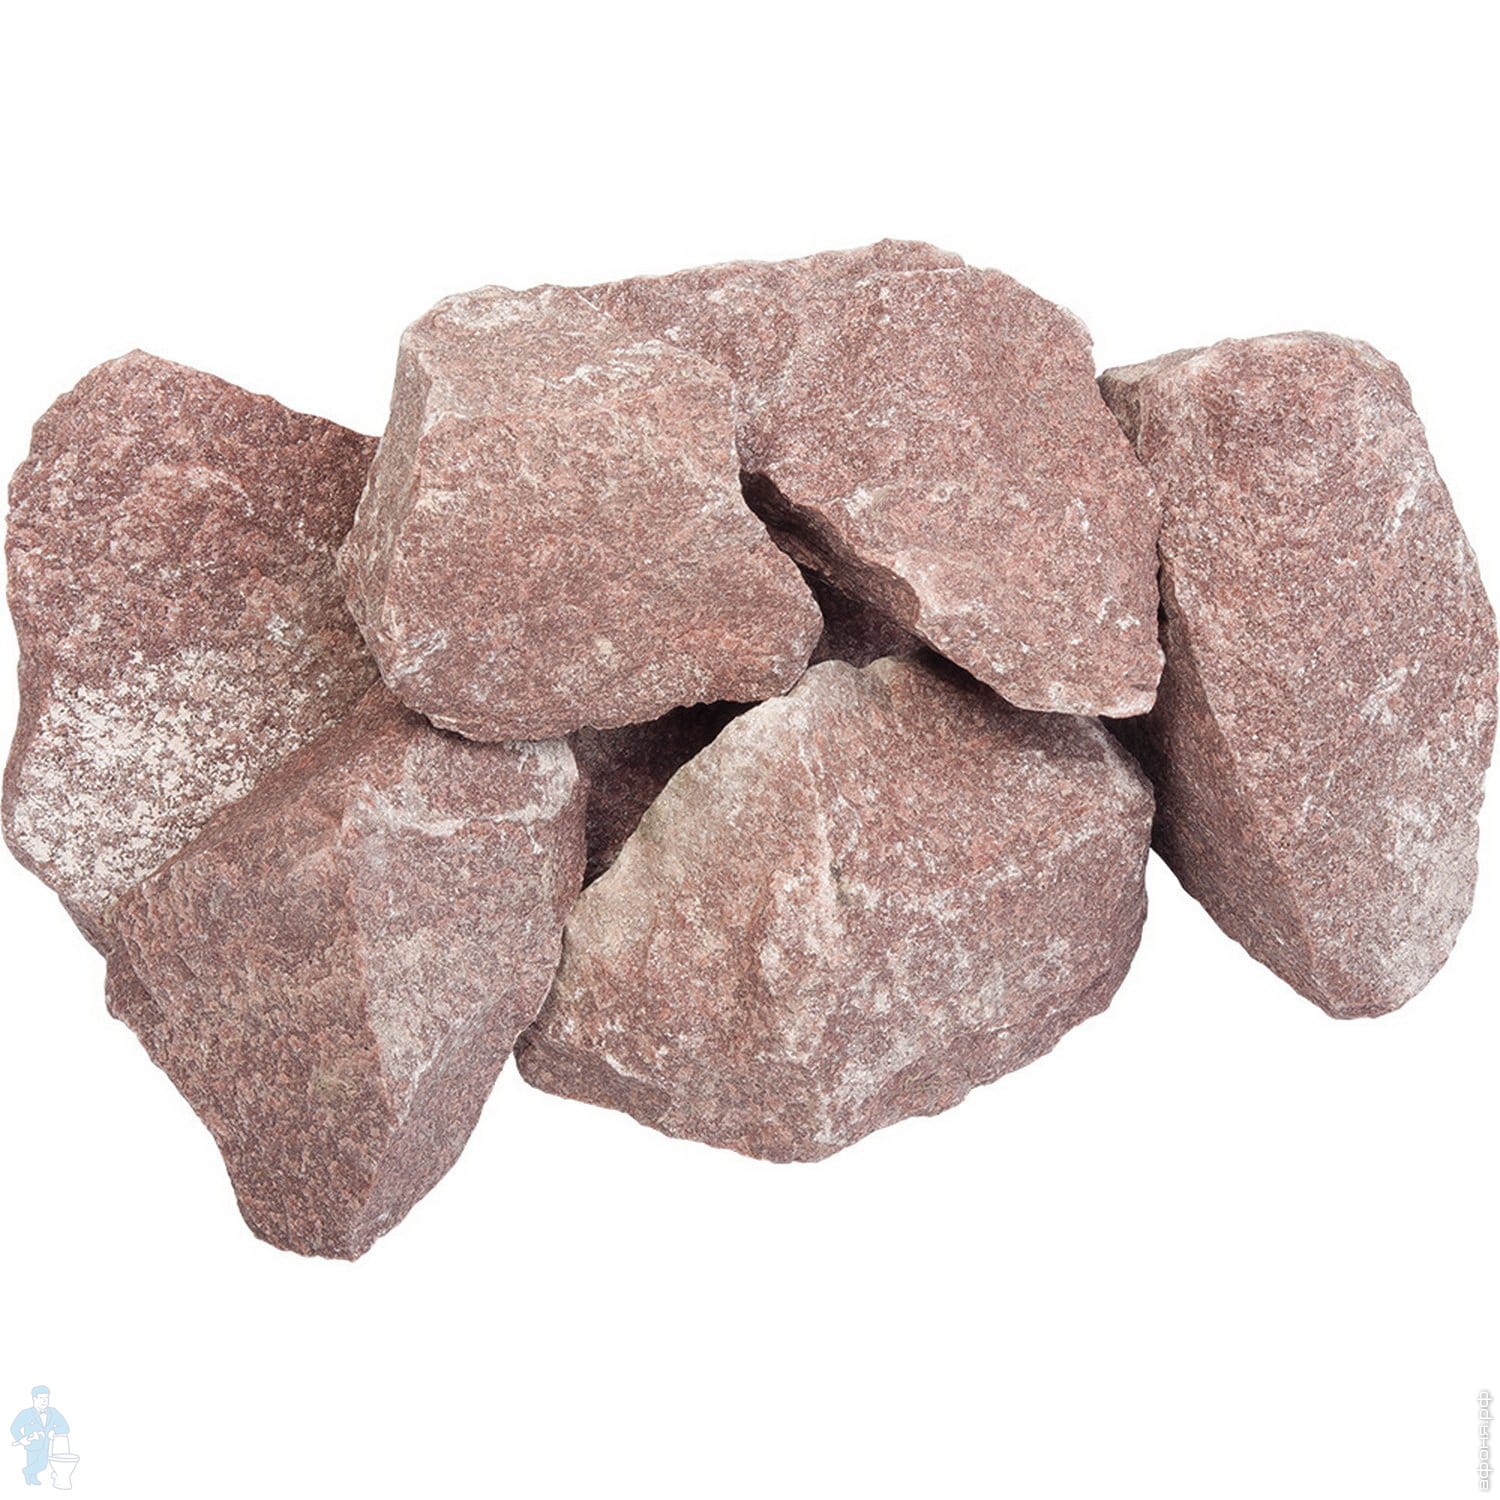 Печеный камень. Камни малиновый кварцит 20 кг. Малиновый кварцит обвалованный 20кг. Камень малиновый кварцит обвалованный 20кг. Кварцит малиновый обвалованный (20кг, коробка).